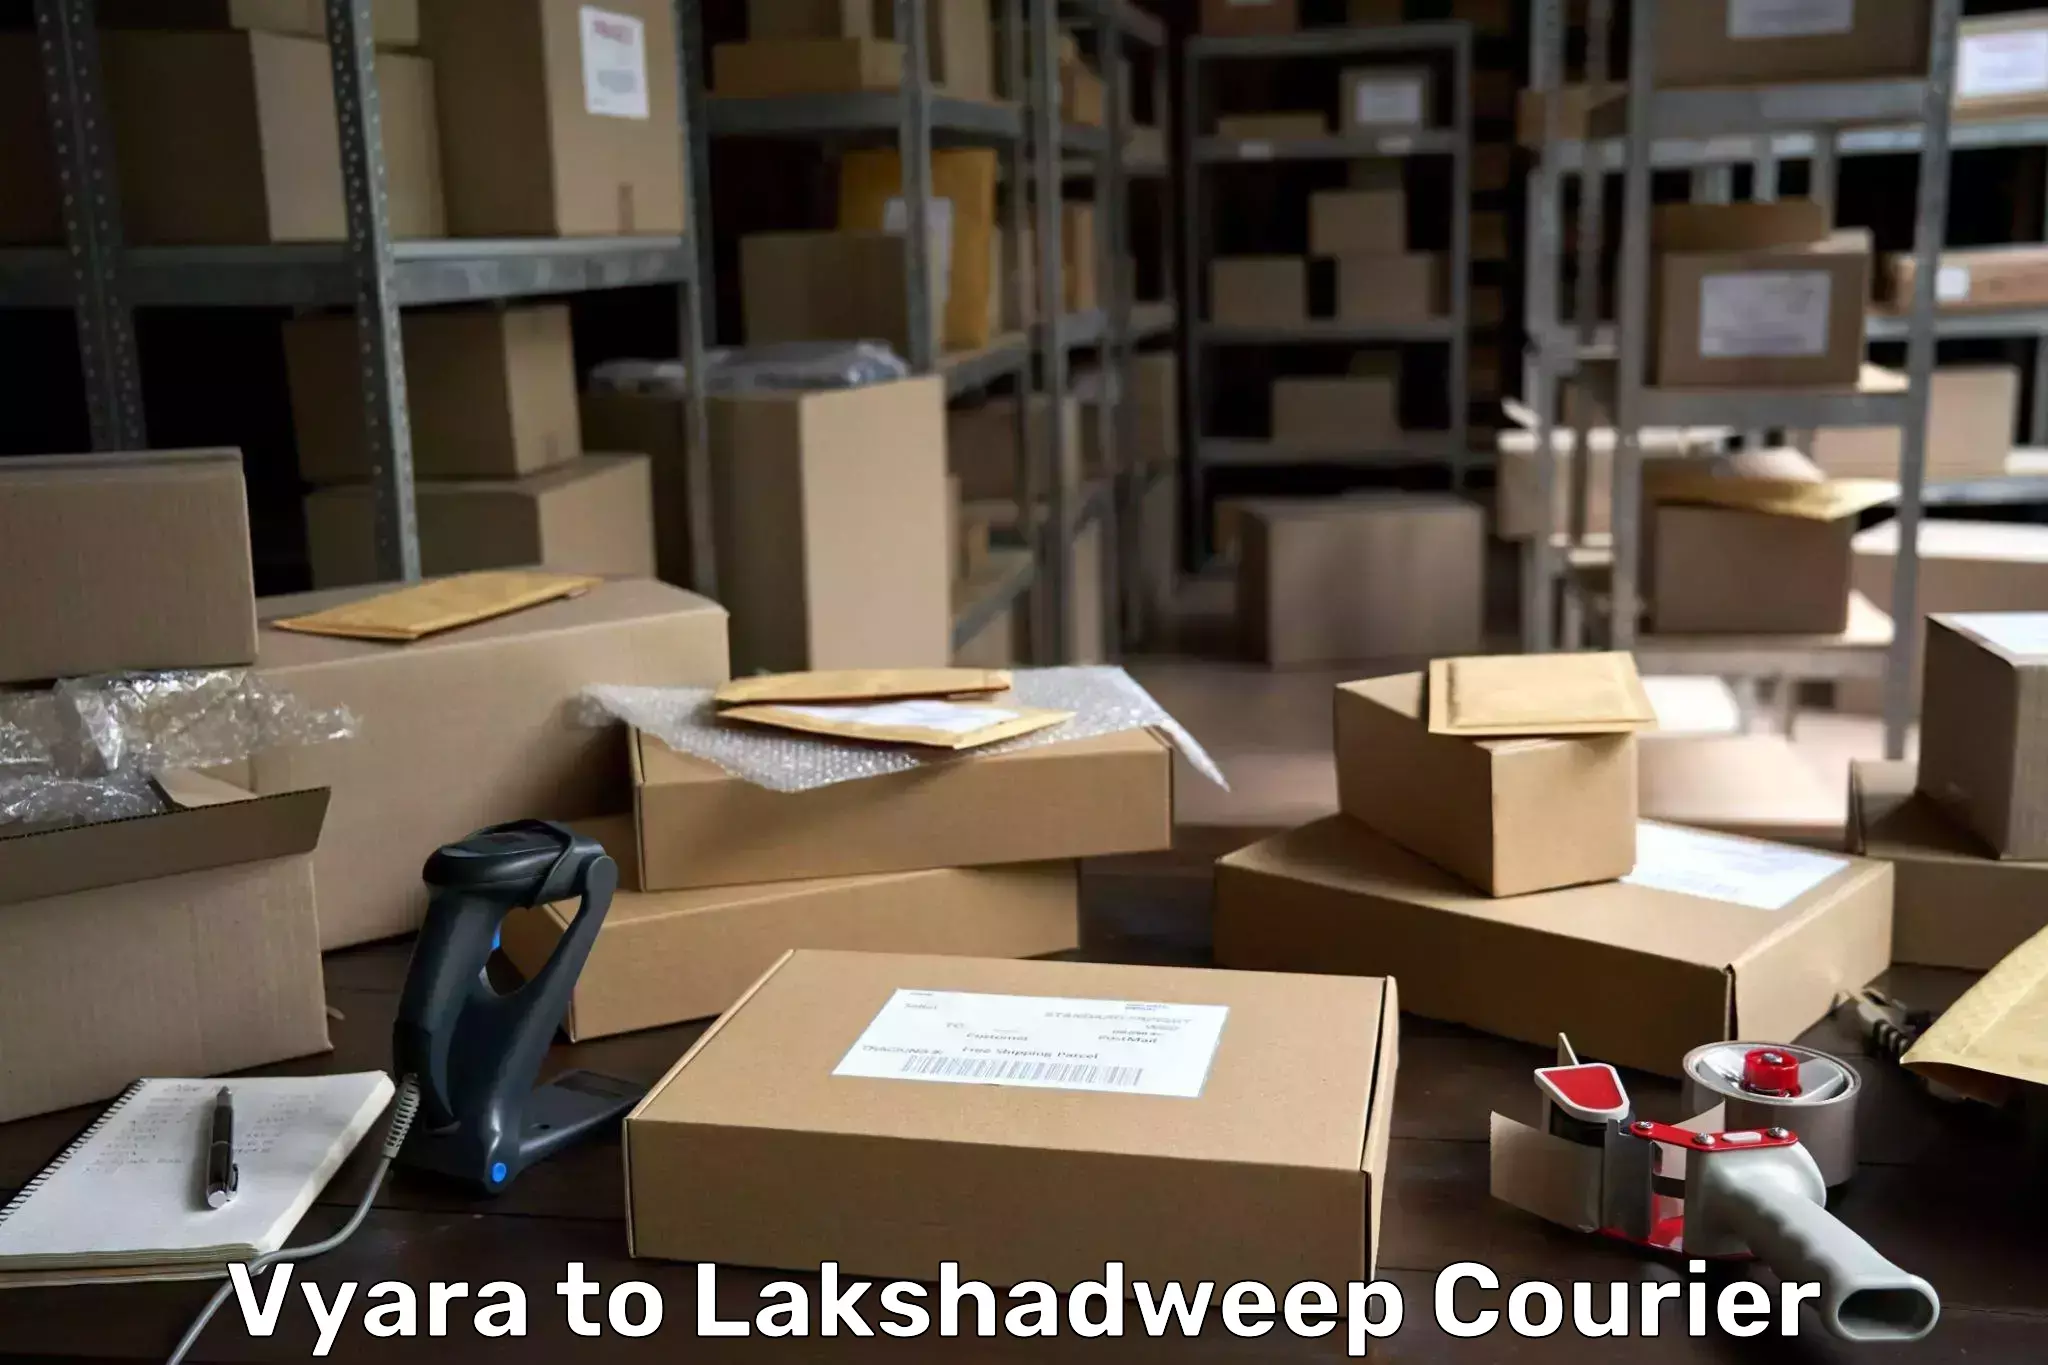 Subscription-based courier Vyara to Lakshadweep